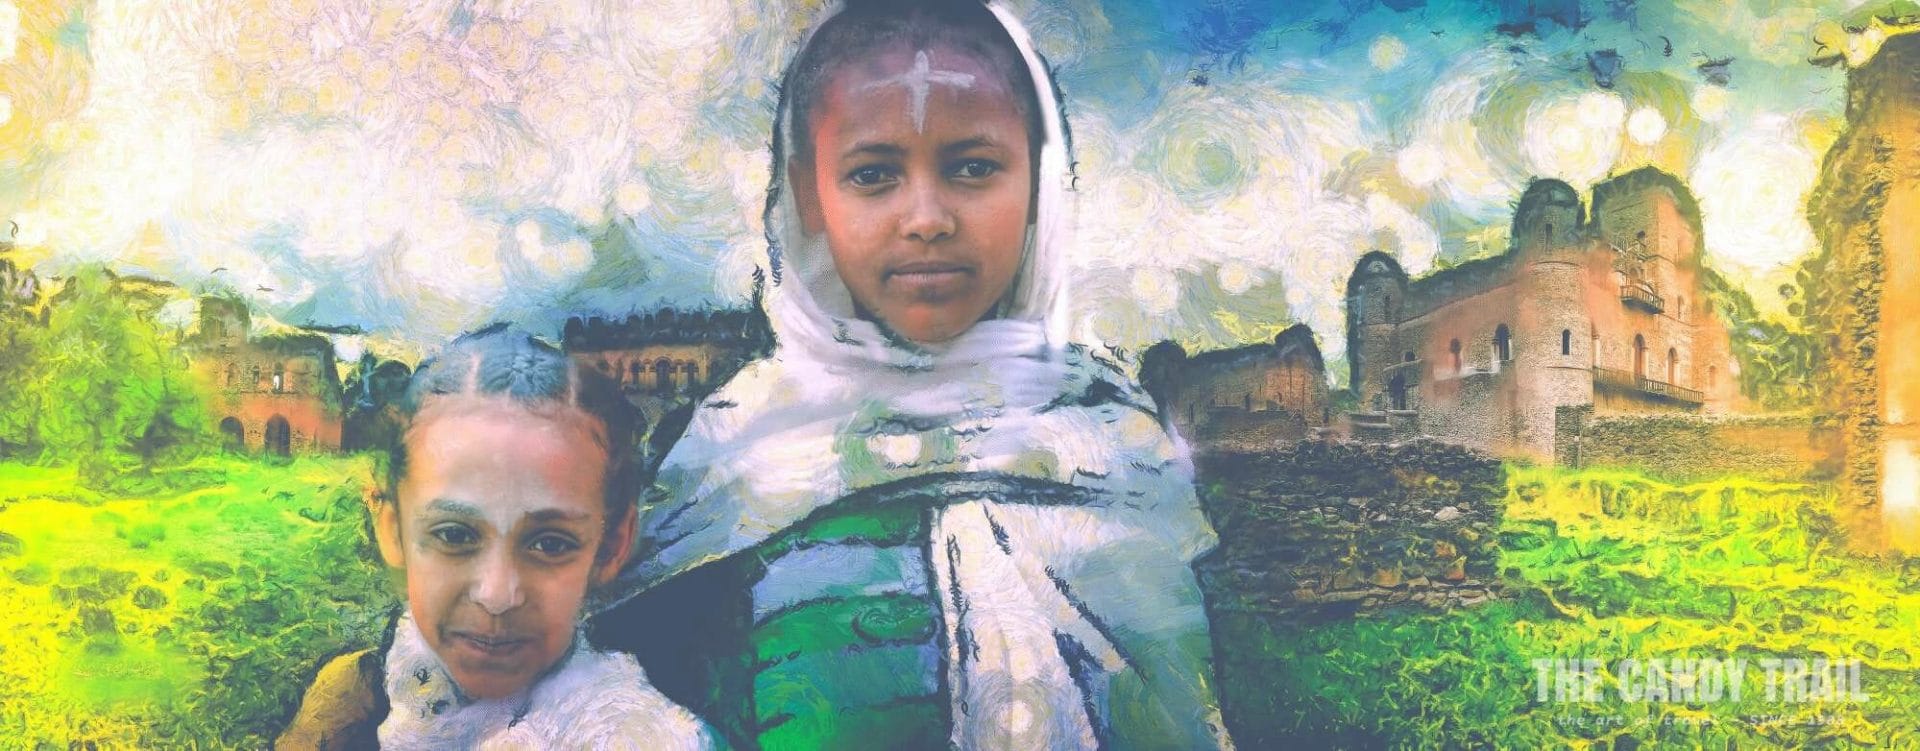 Girls of Gondar - Ethiopia: MRP ART - 2013